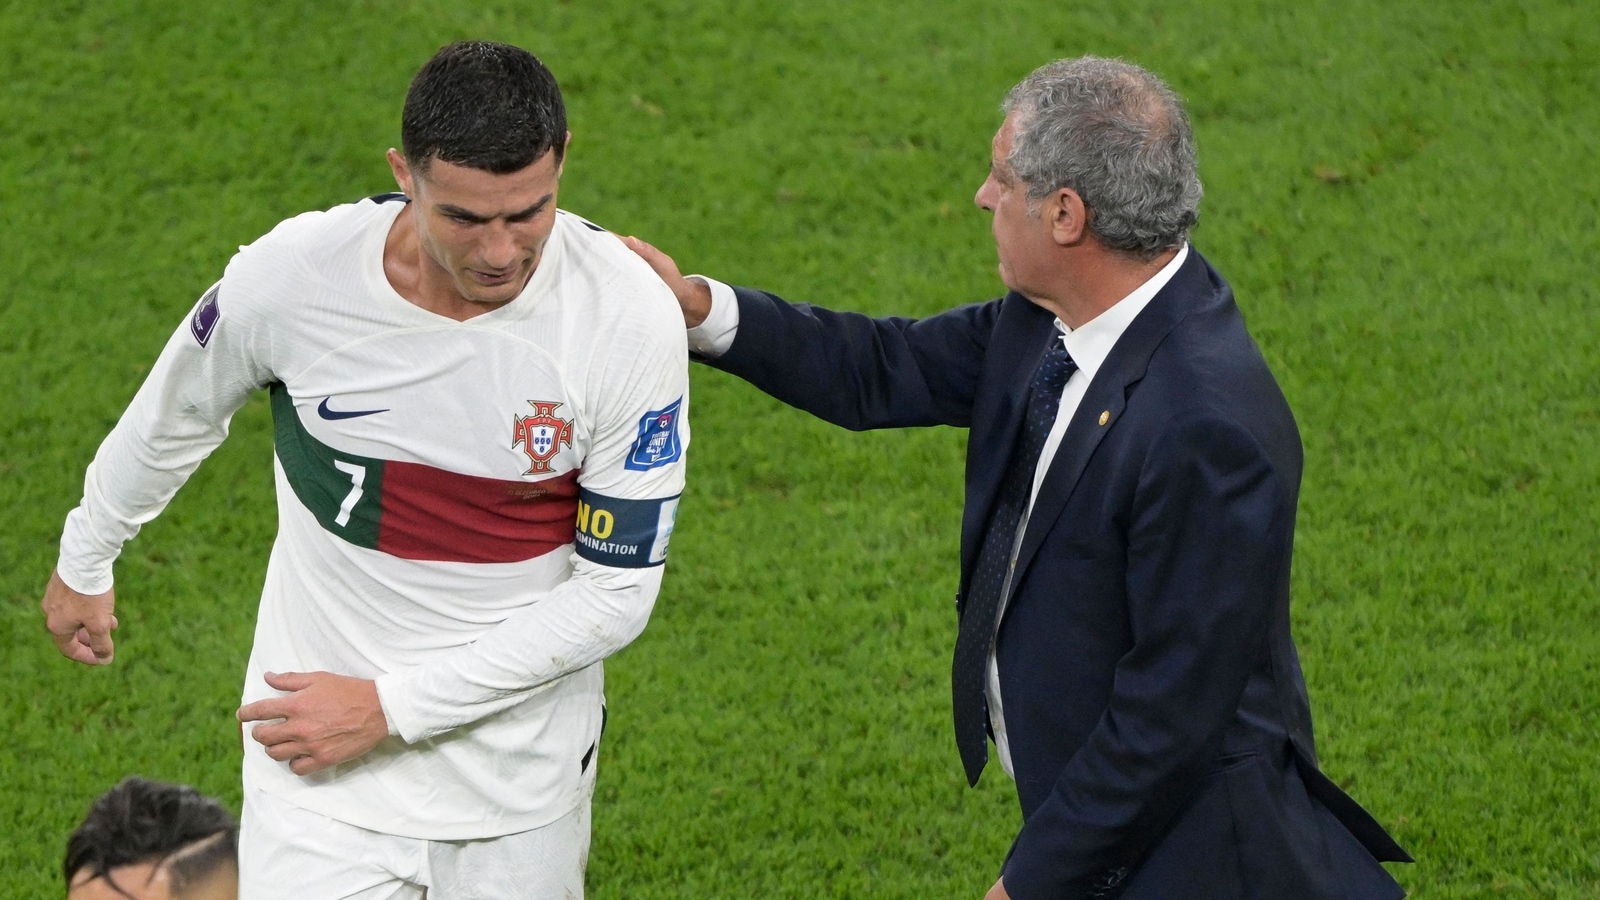 Santos responde a críticas à decisão de colocar Ronaldo em campo após saída de Portugal |  notícias de futebol